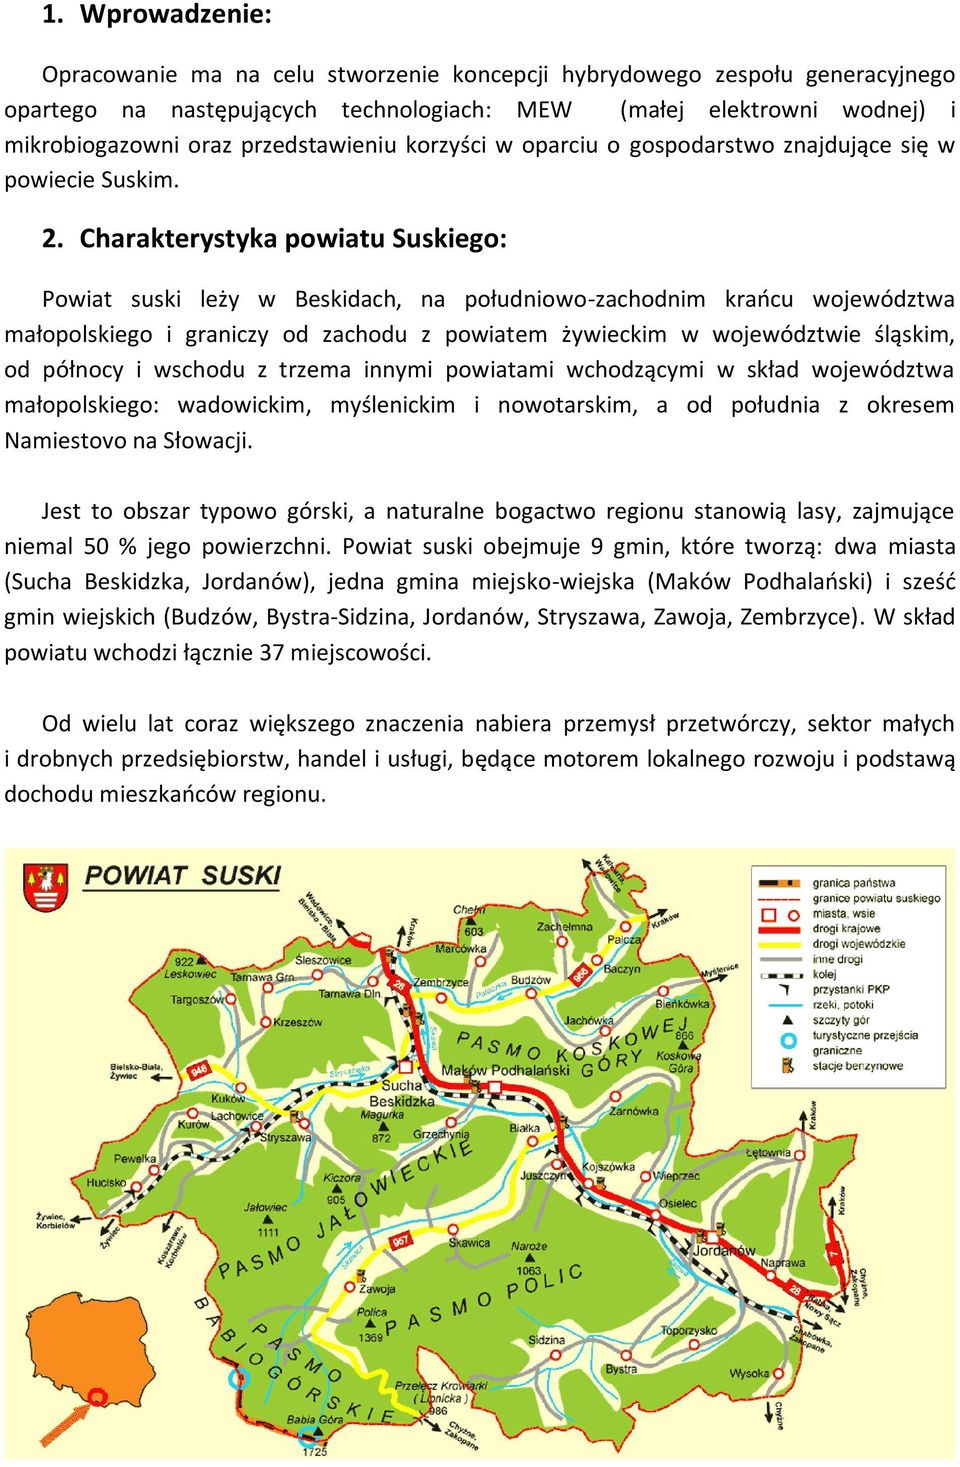 Charakterystyka powiatu Suskiego: Powiat suski leży w Beskidach, na południowo-zachodnim krańcu województwa małopolskiego i graniczy od zachodu z powiatem żywieckim w województwie śląskim, od północy